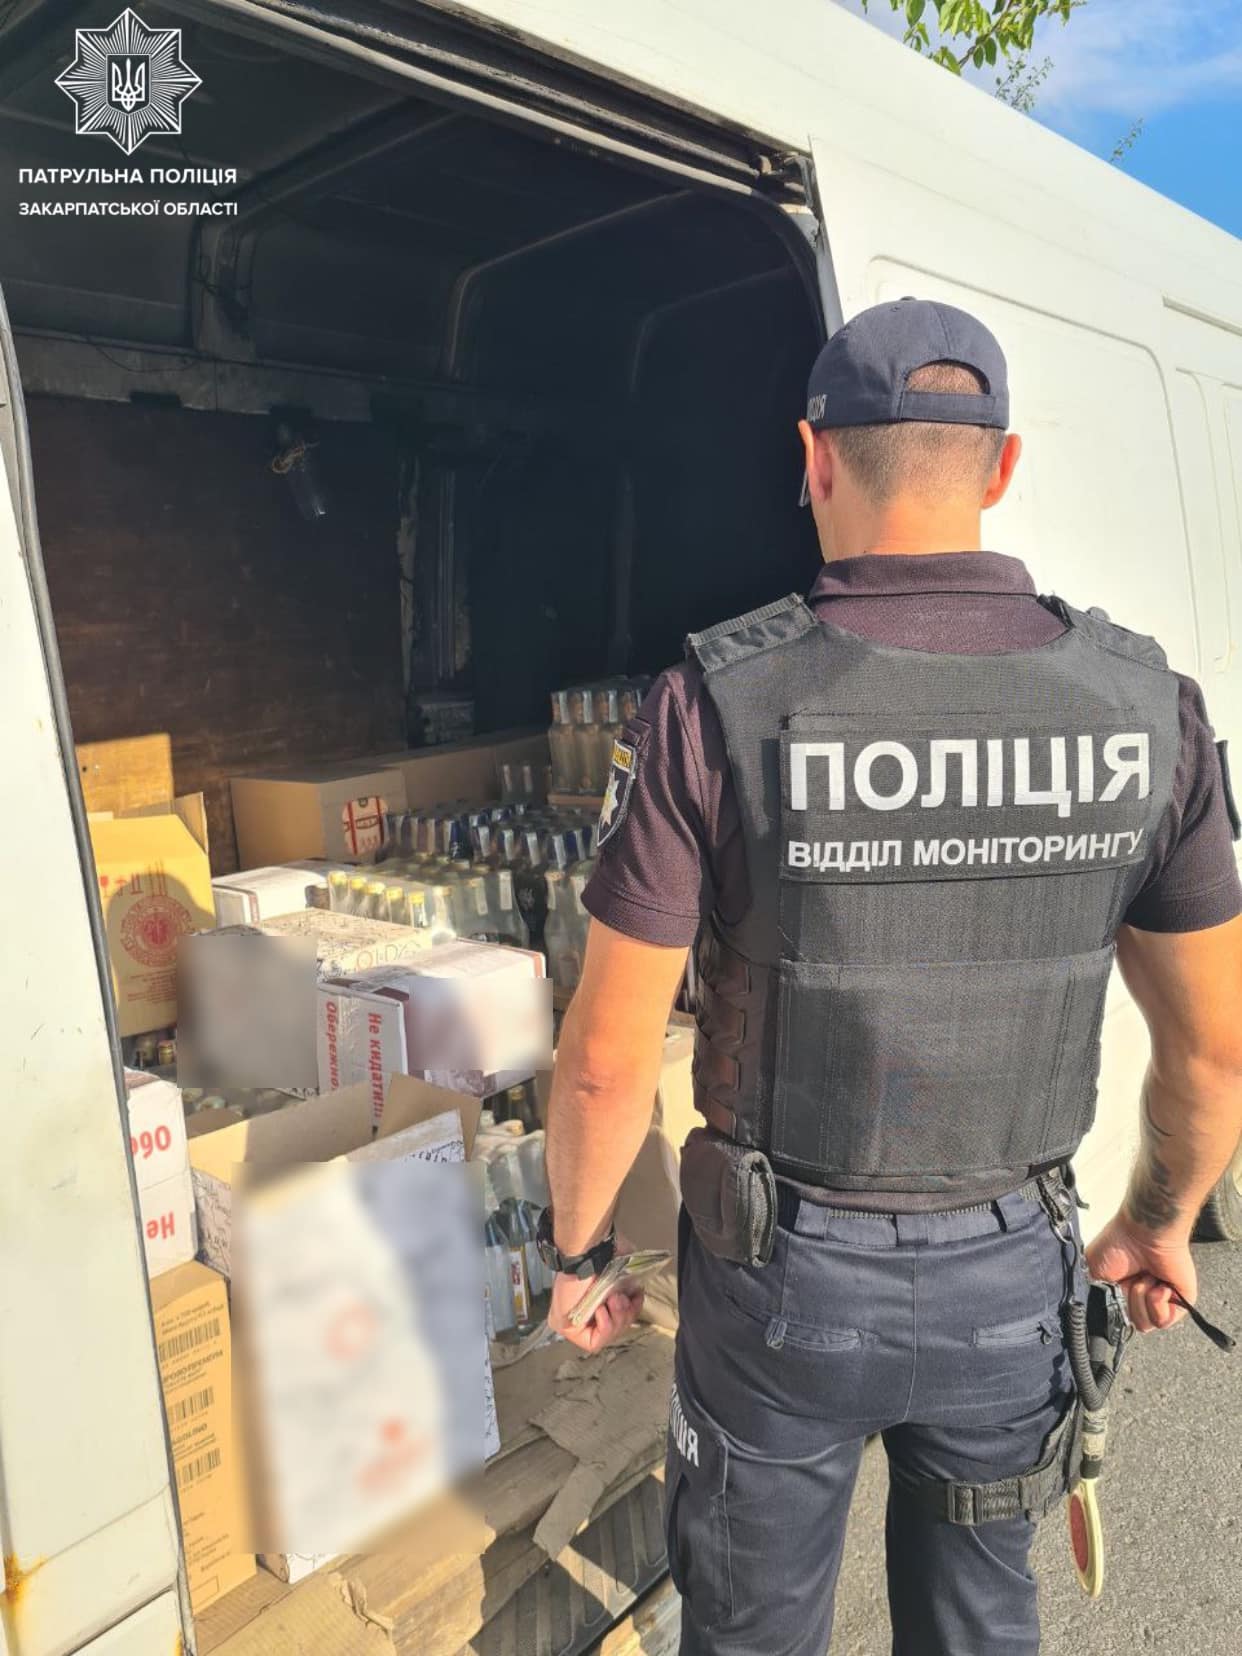 Сьогодні, 3 липня, в Ужгороді затримали водія мікроавтобуса, який провозив товар без документів.